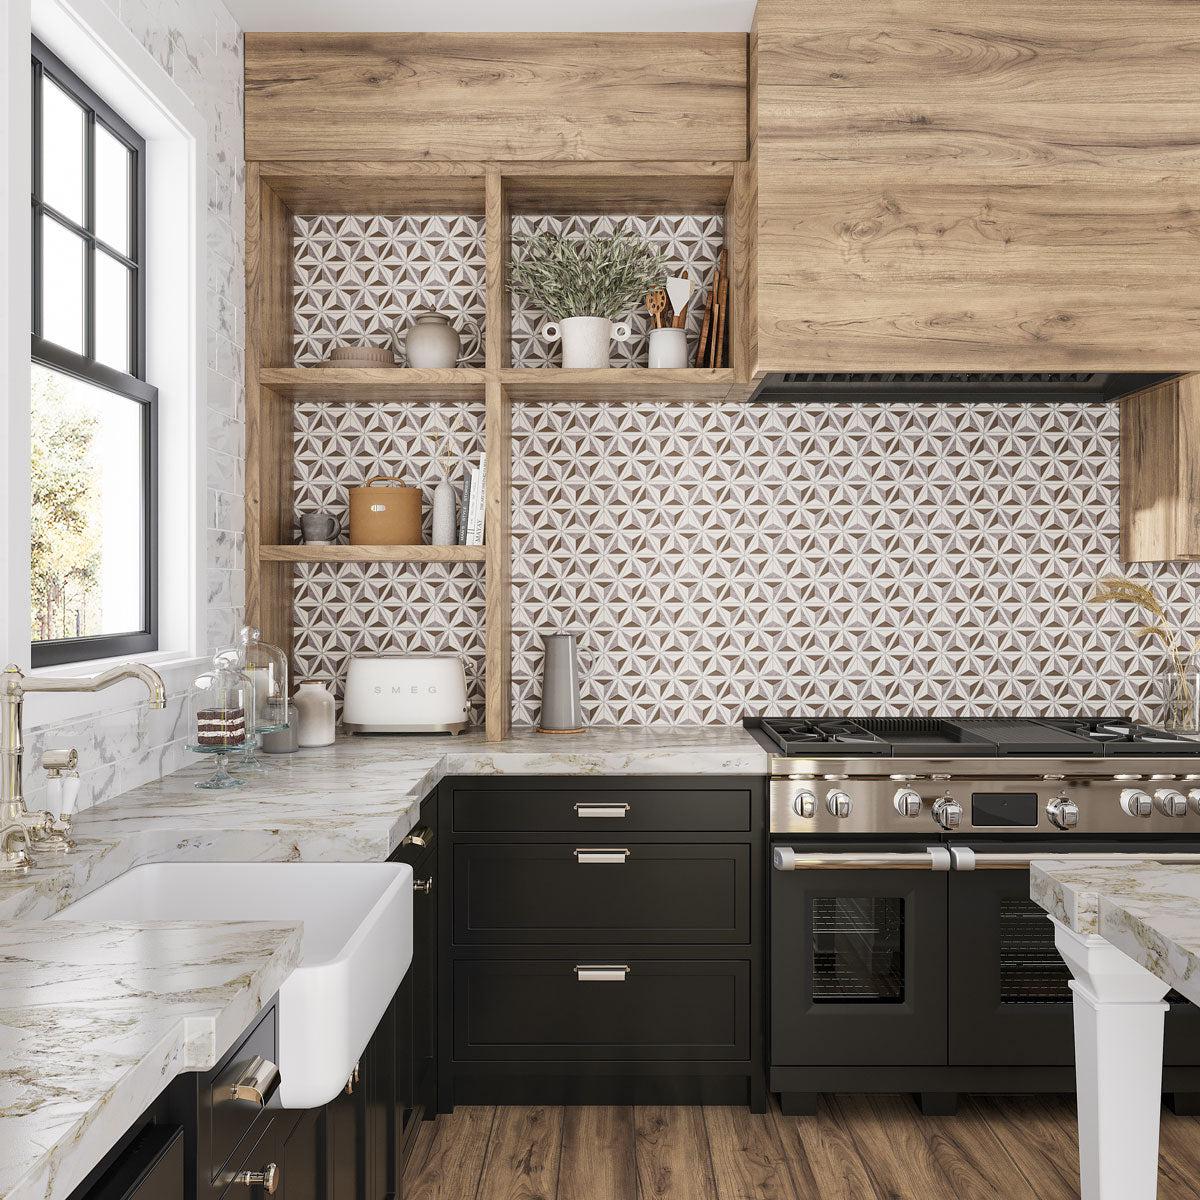 Patterned Kitchen backsplash tile within open shelves behind the stove